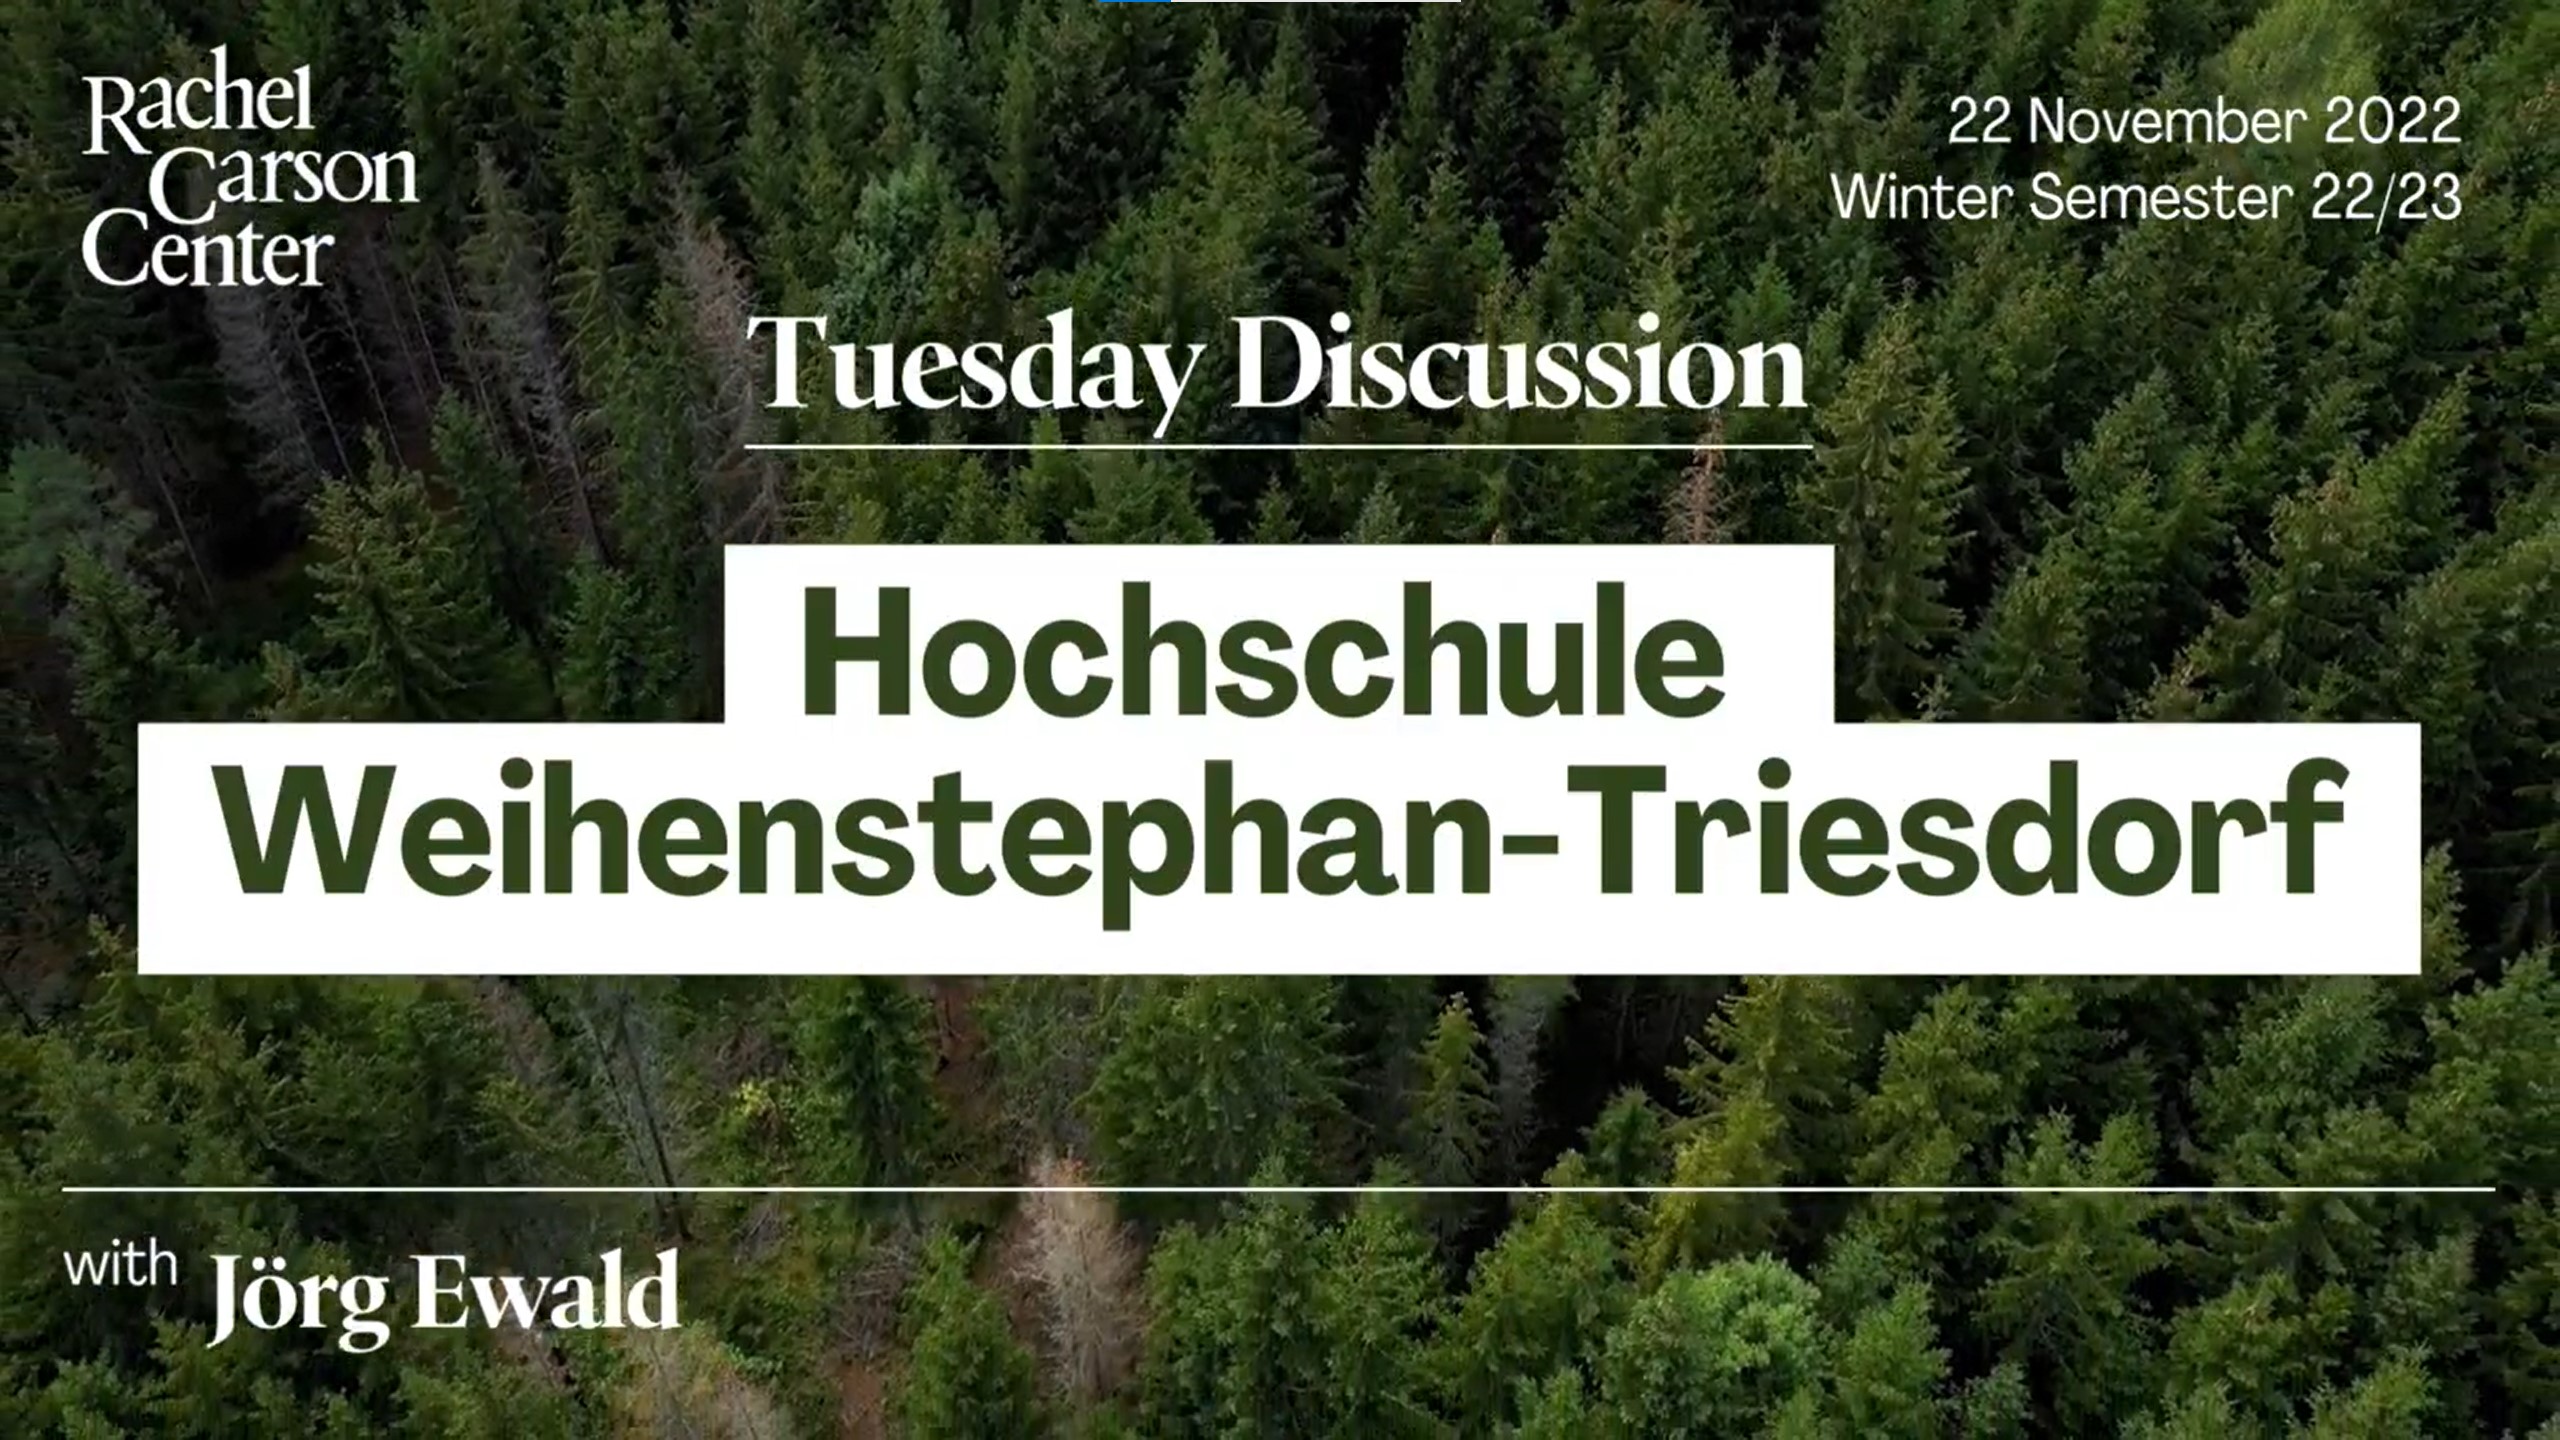 Bild mit Bäumen und Beschriftung: Tuesday Discussion Hochschule Weihenstephan-Triesdorf